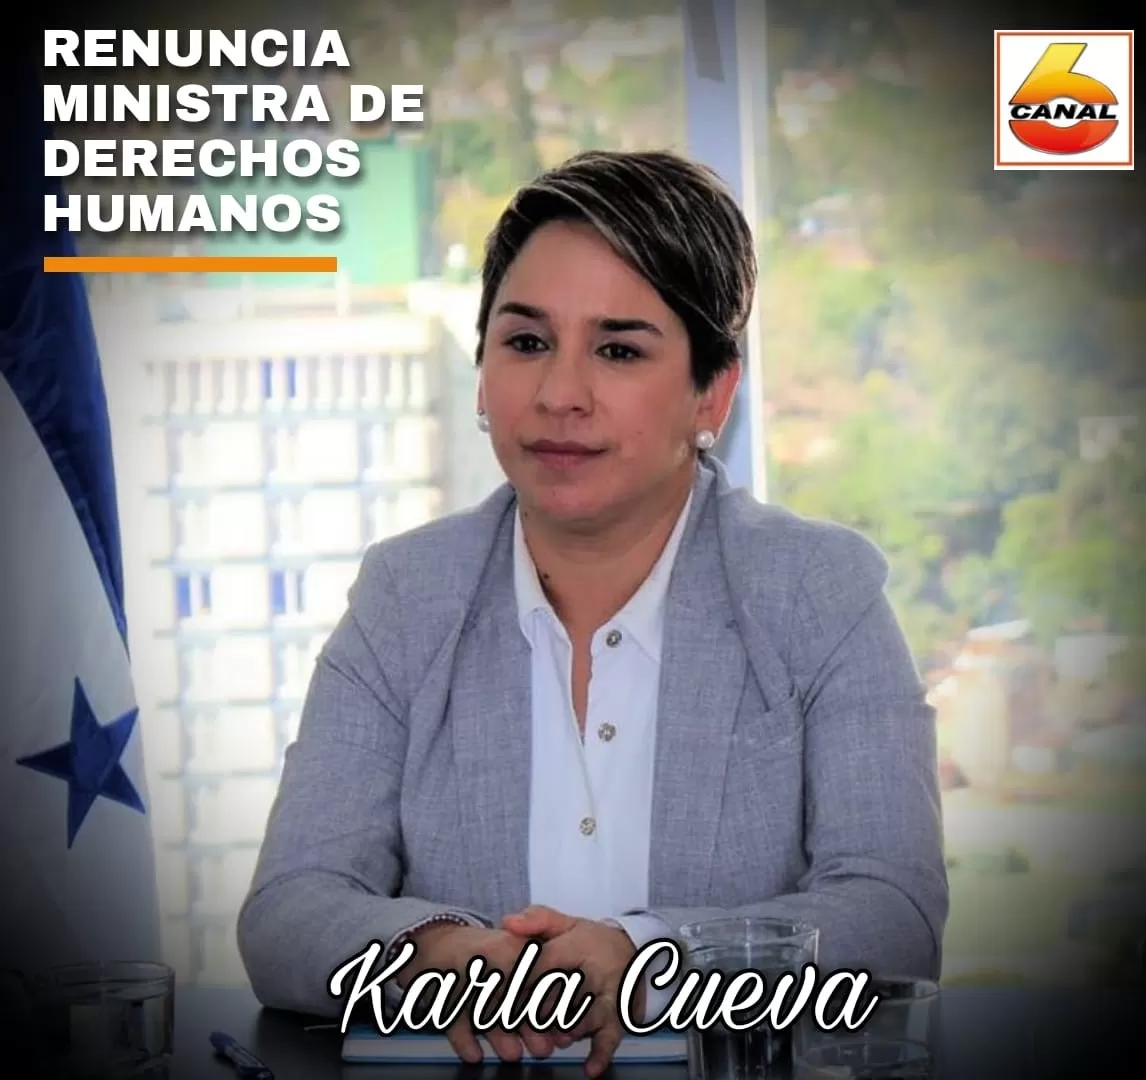 Renuncia de su cargo Karla Cueva ministra de Derechos Humanos, tras 3 años en el puesto